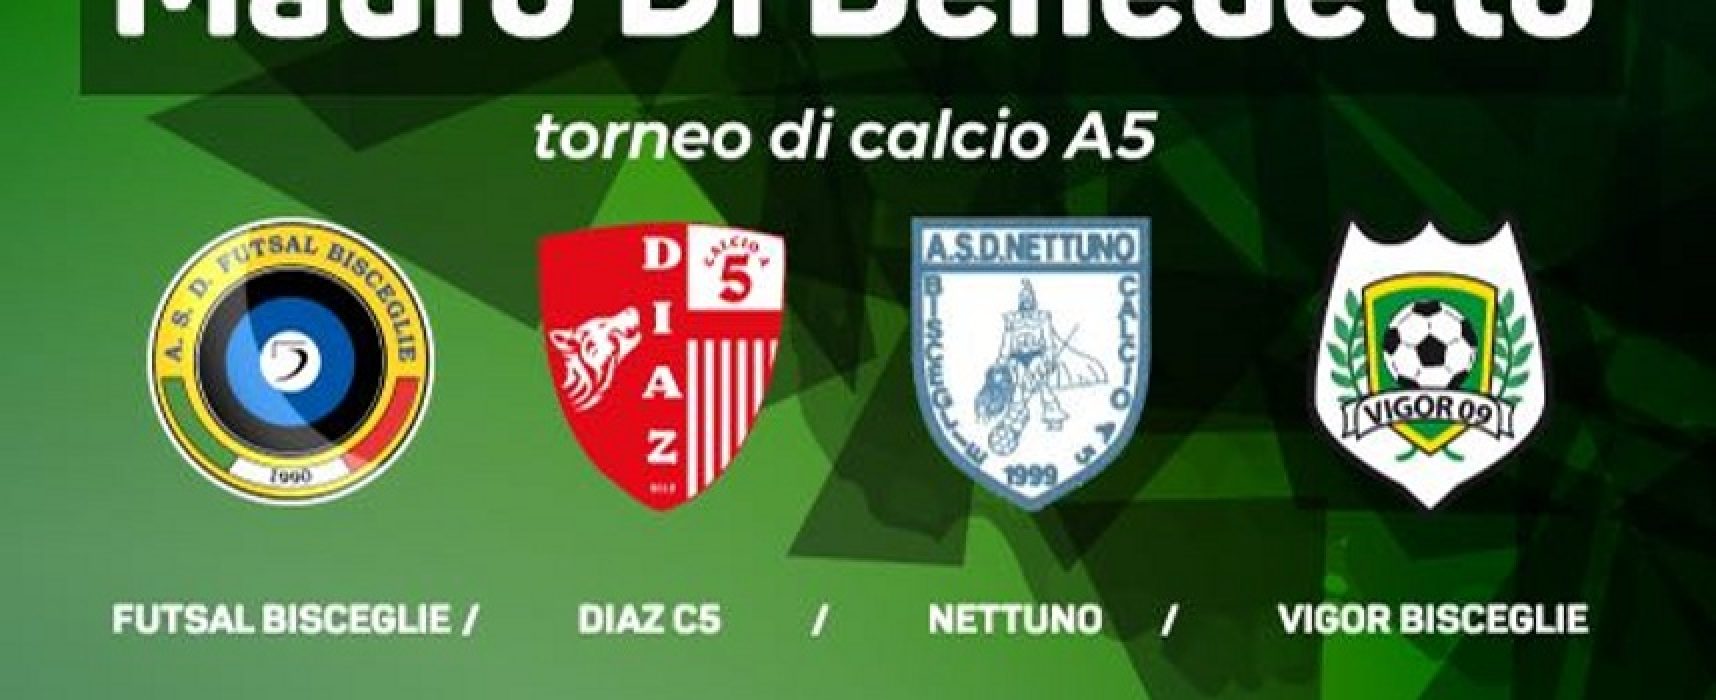 Calcio a 5 giovanile, il Futsal Bisceglie organizza il “Memorial Mauro Di Benedetto”